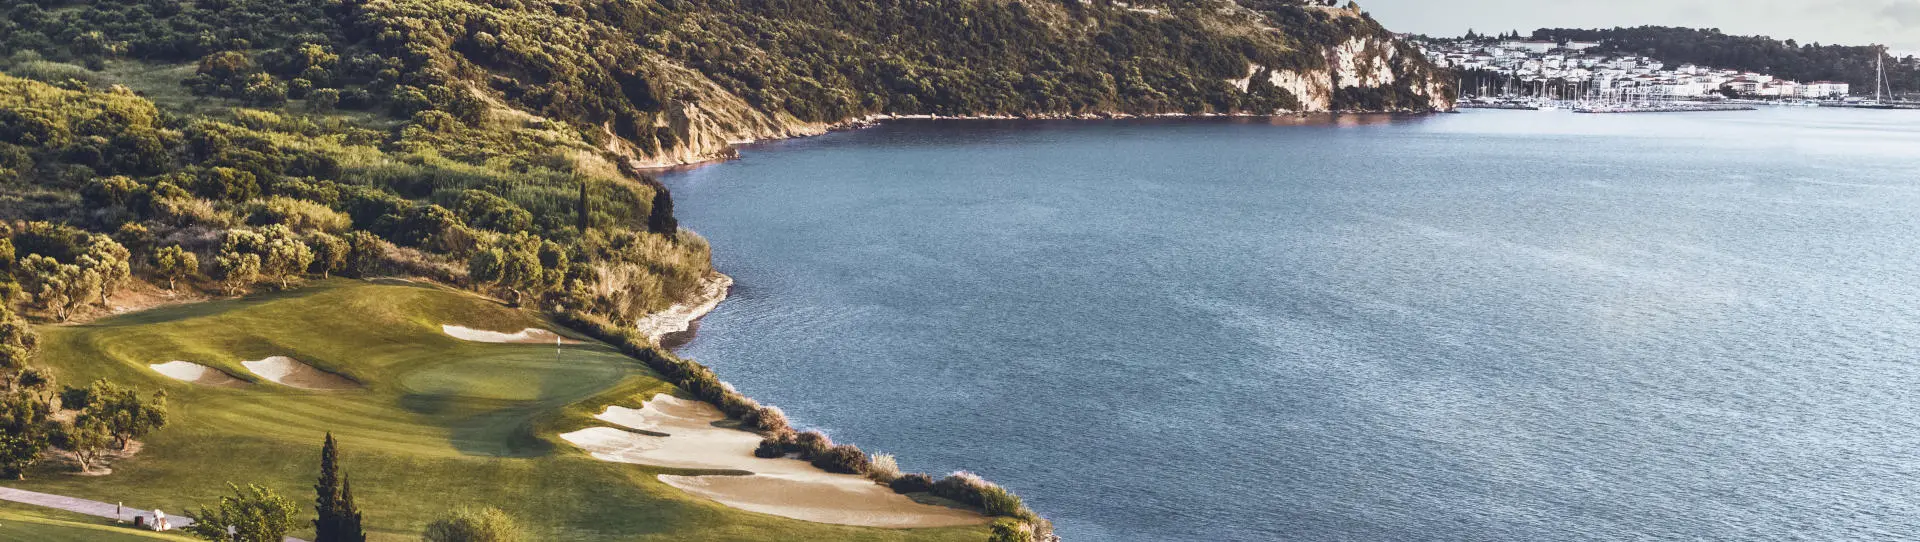 Greece golf courses - The Bay Course - Photo 1